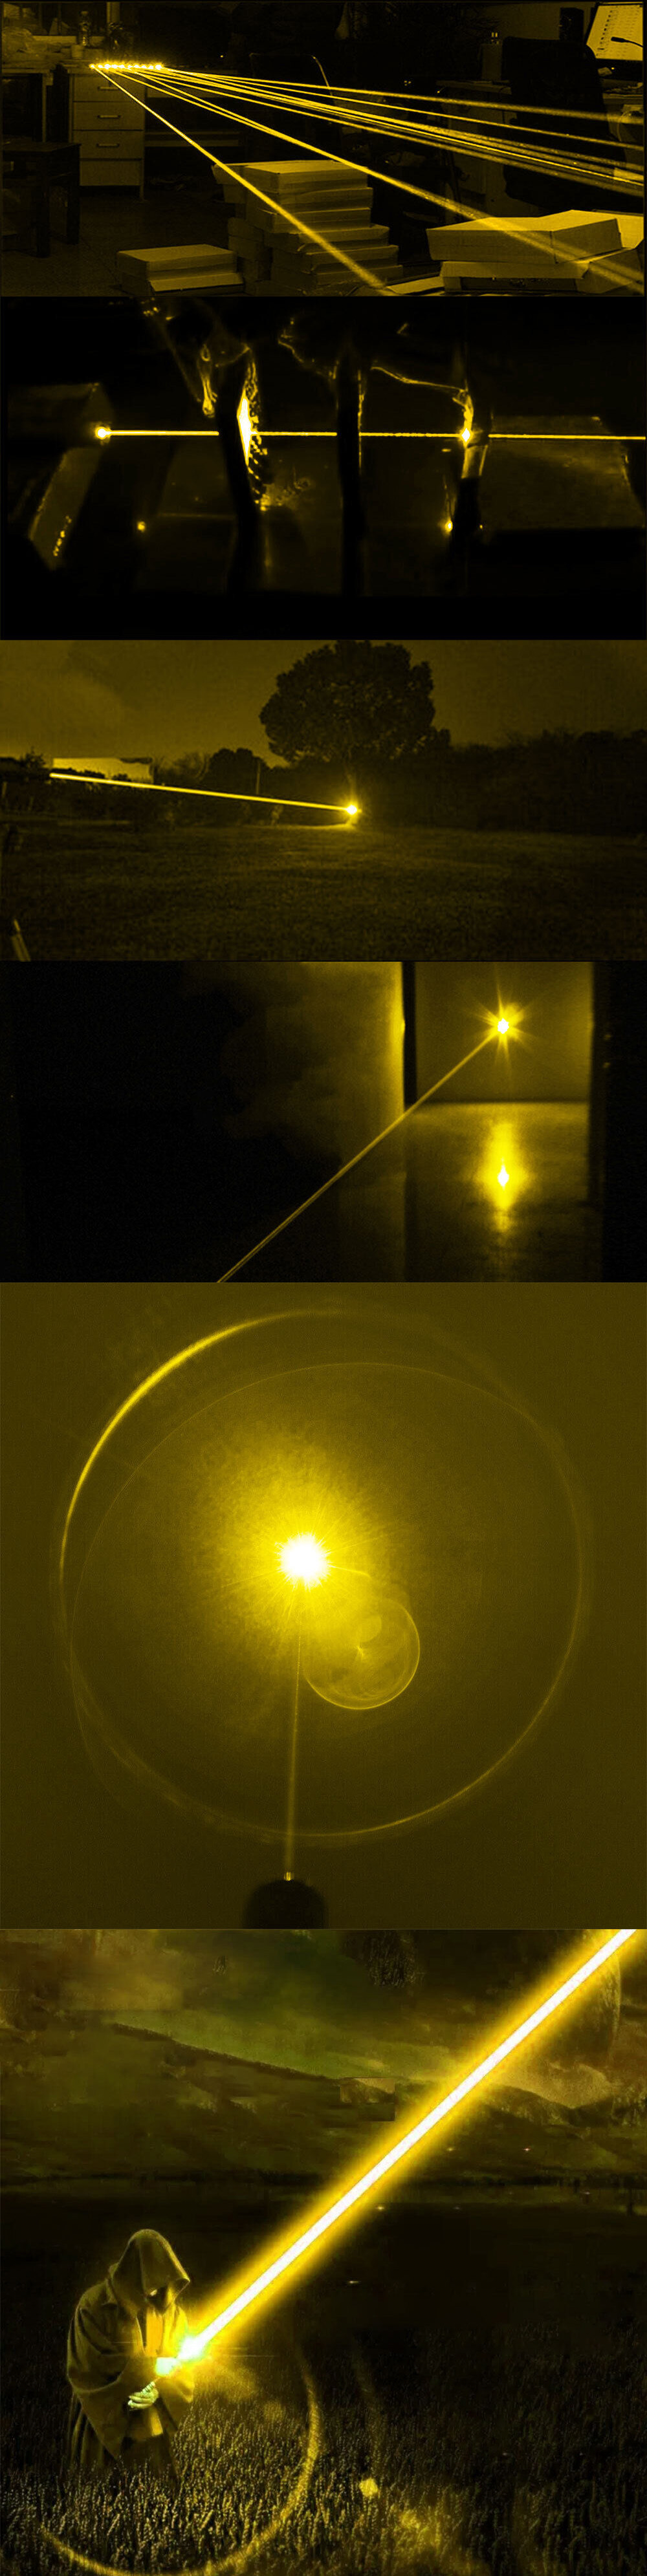 Puntatore laser giallo